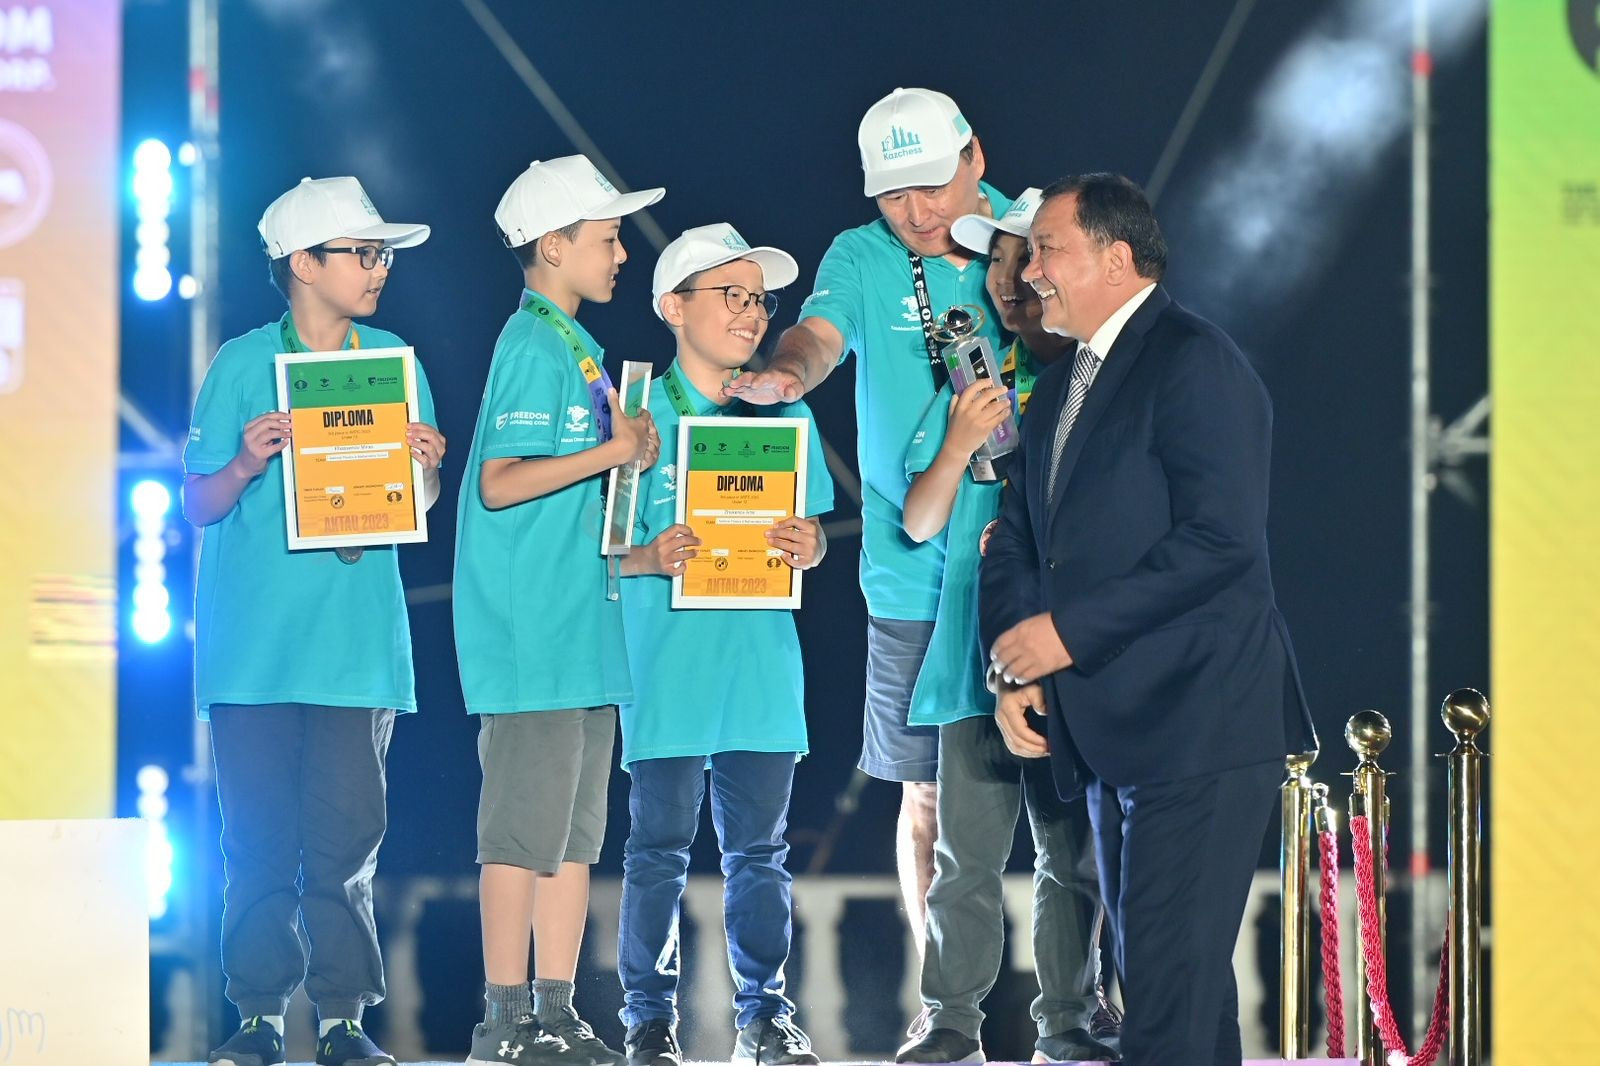 Вы сейчас просматриваете Казахстанские школьники выиграли серебро и бронзу на чемпионате мира по шахматам